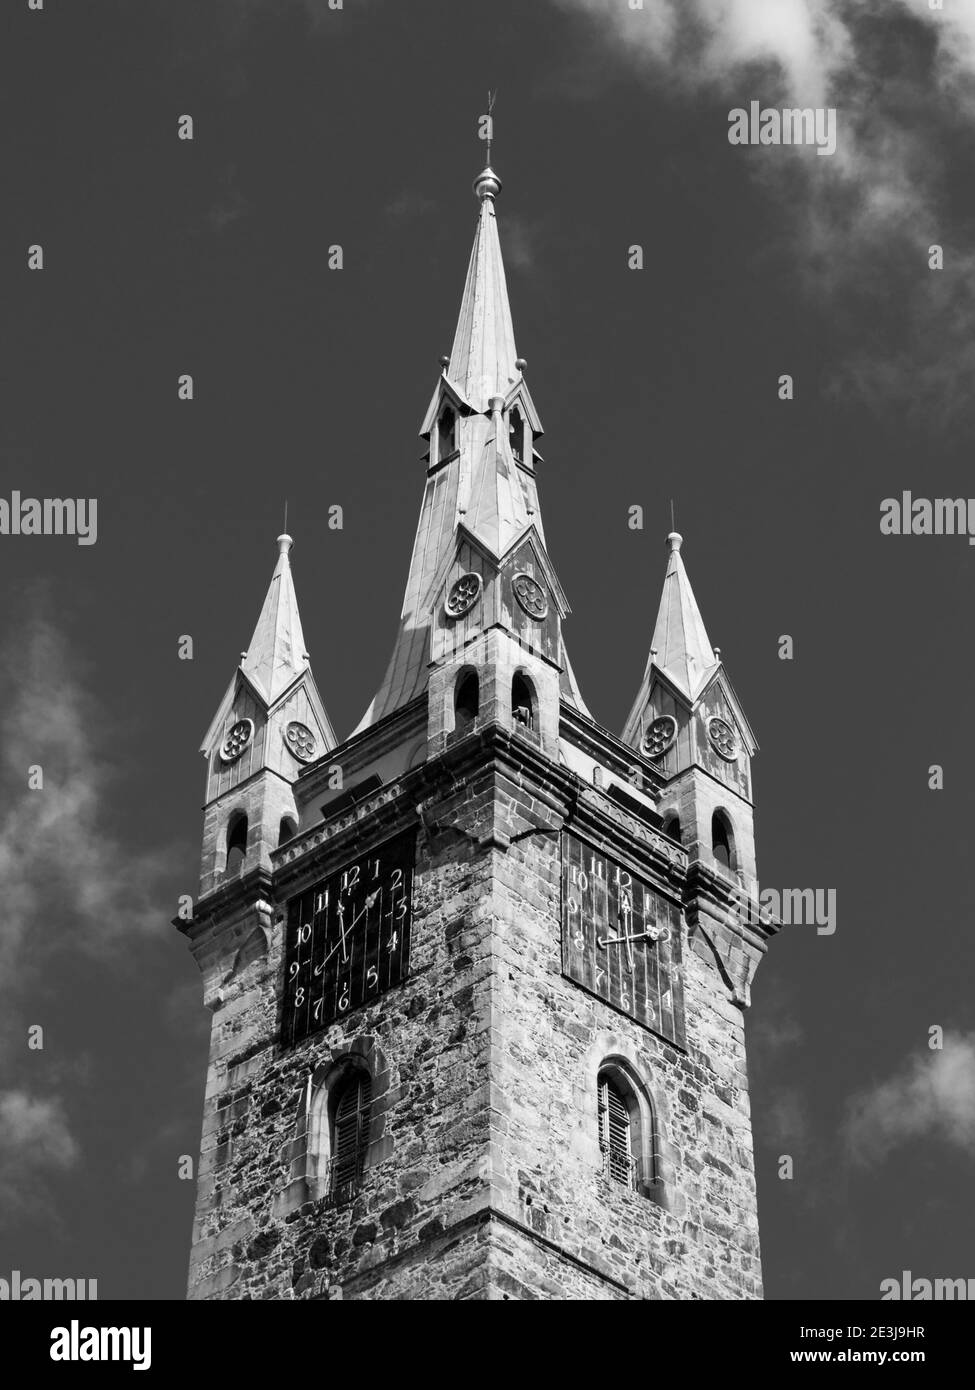 Vista dettagliata della Torre Nera a Klatovy, Repubblica Ceca. Immagine in bianco e nero. Foto Stock